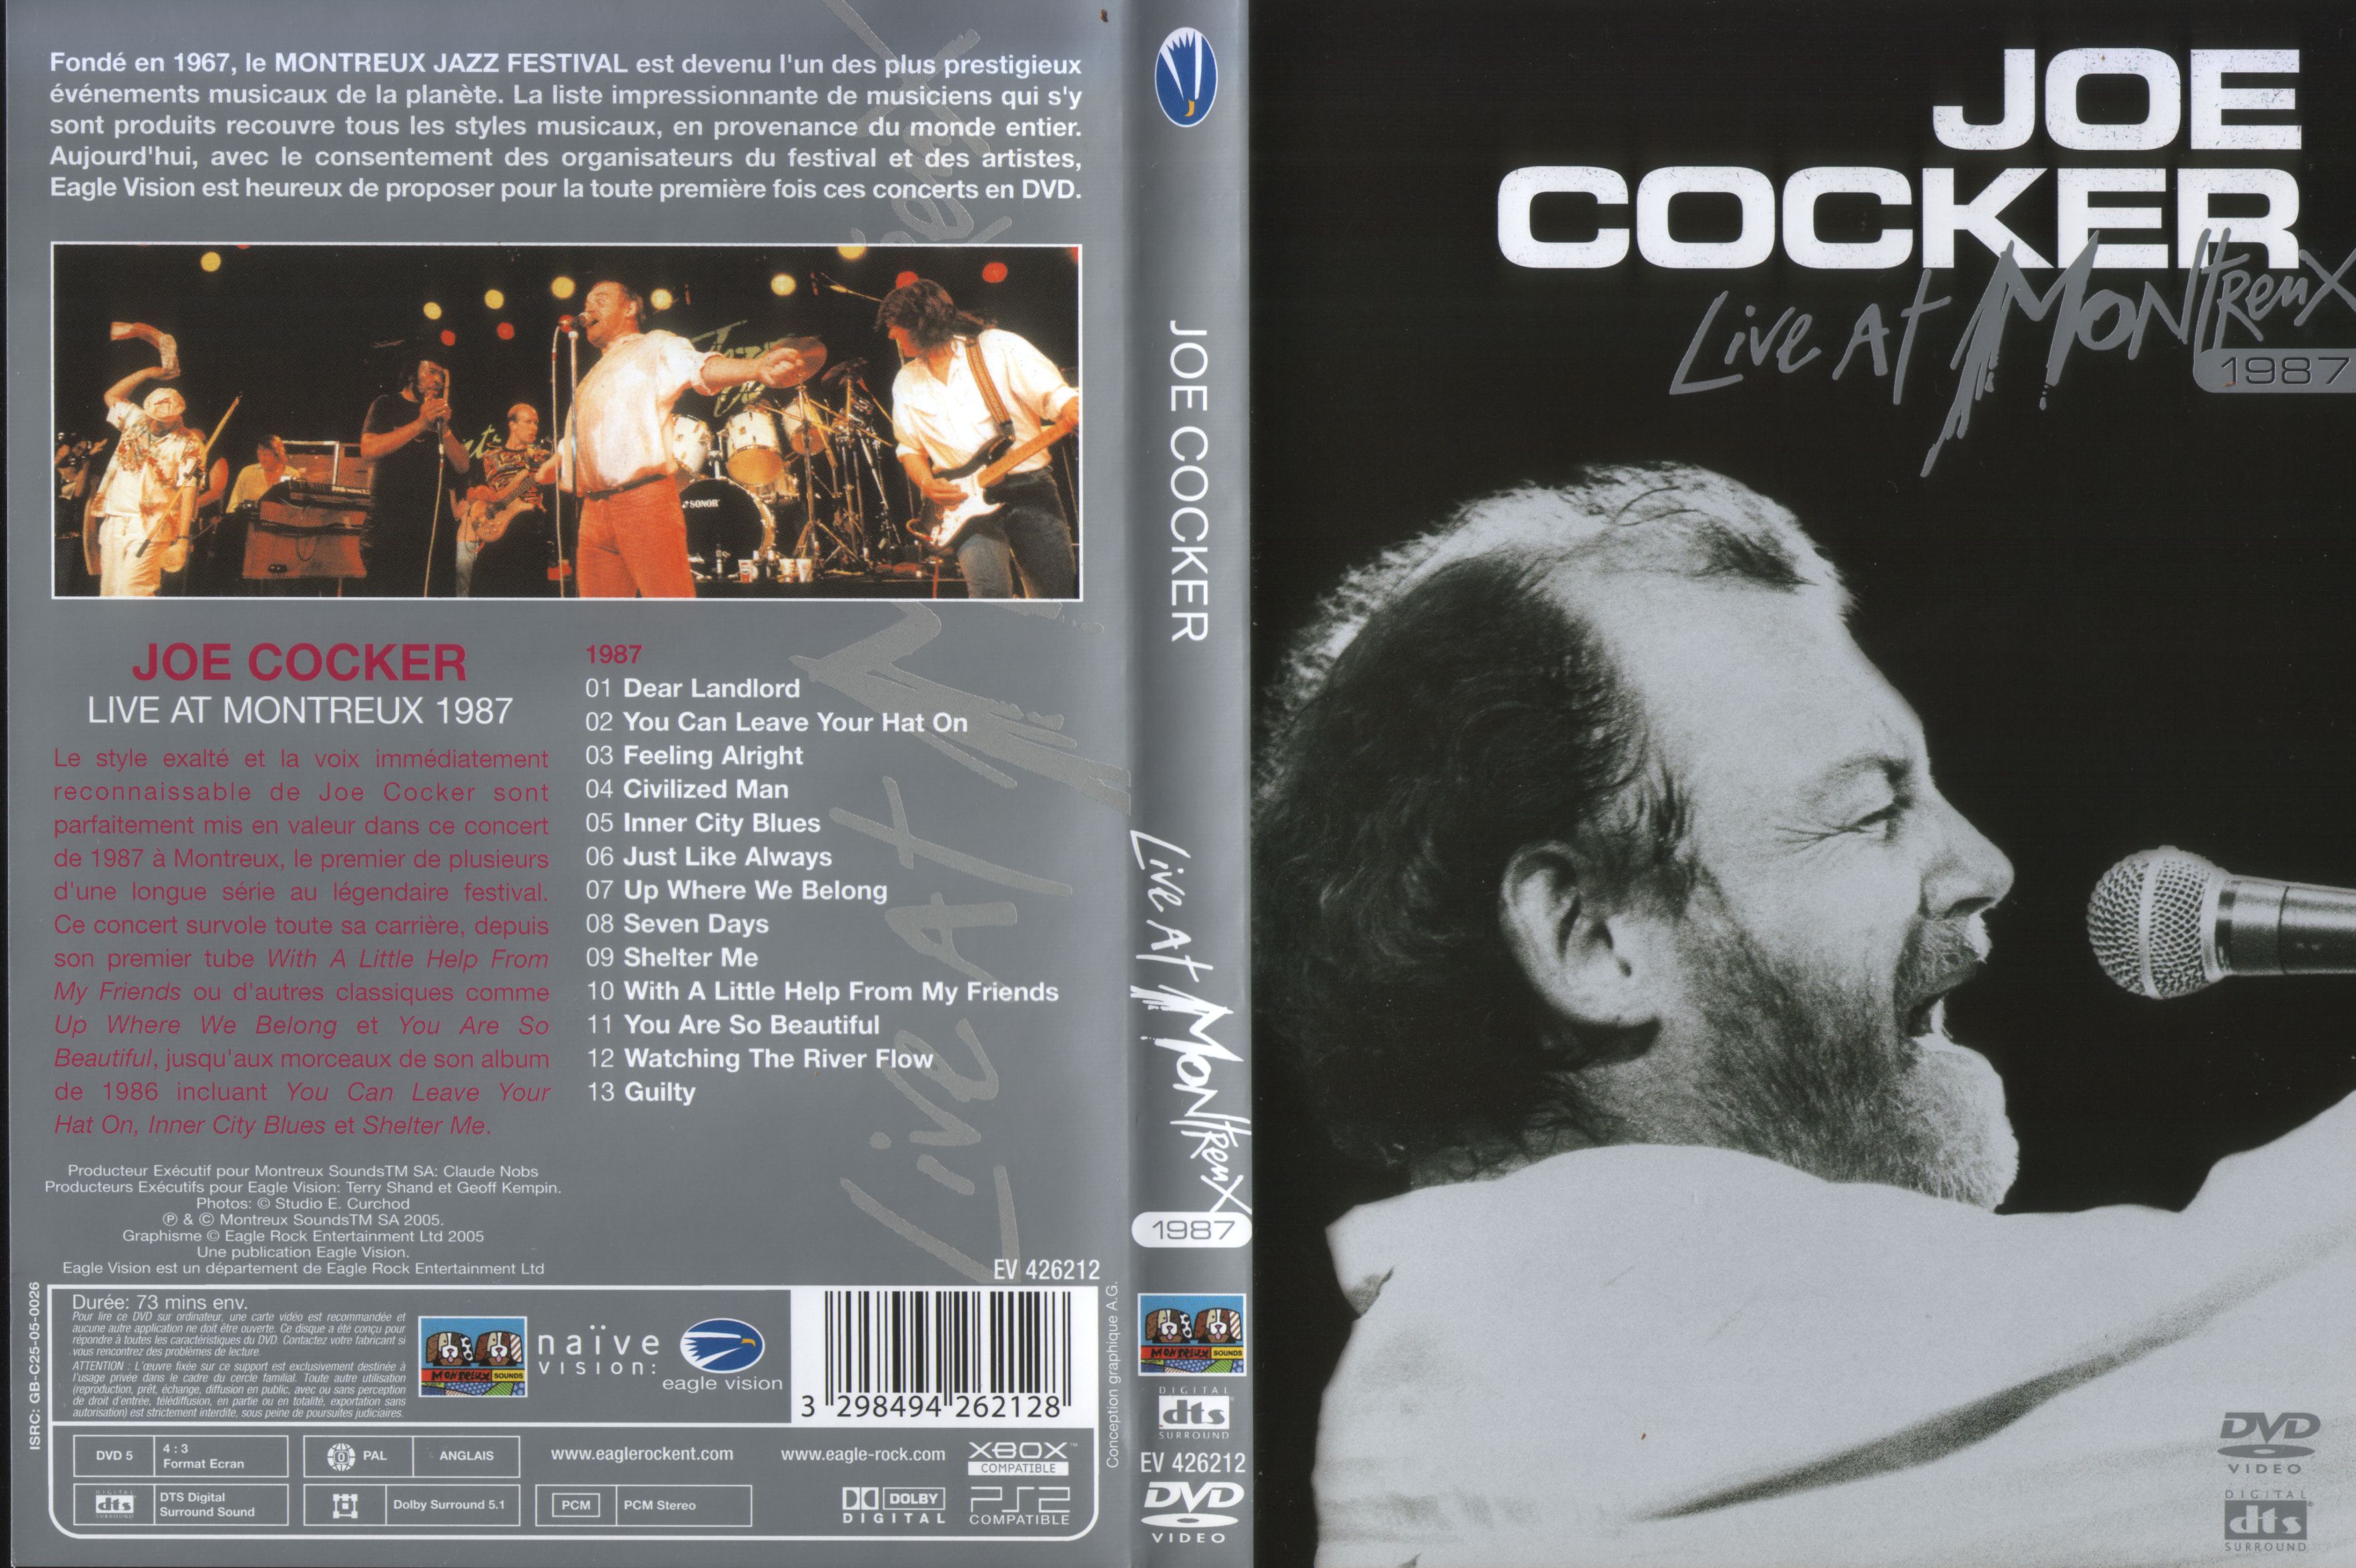 Jaquette DVD Joe Cocker Live at Montreux 1987